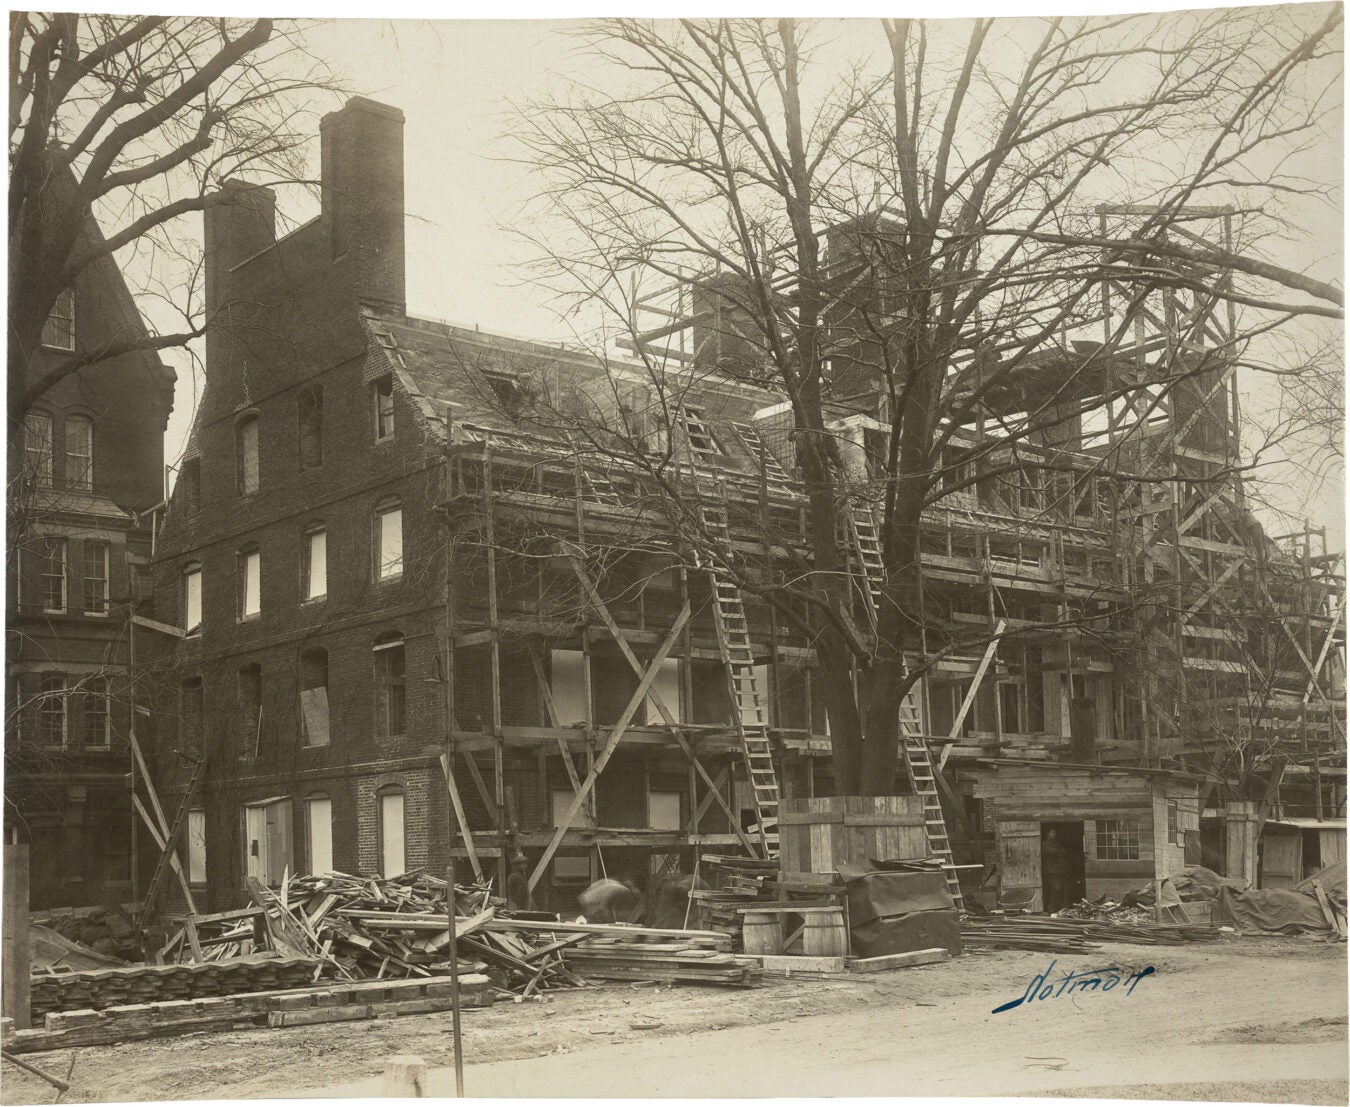 Mass Hall under renovation after 1924 fire.